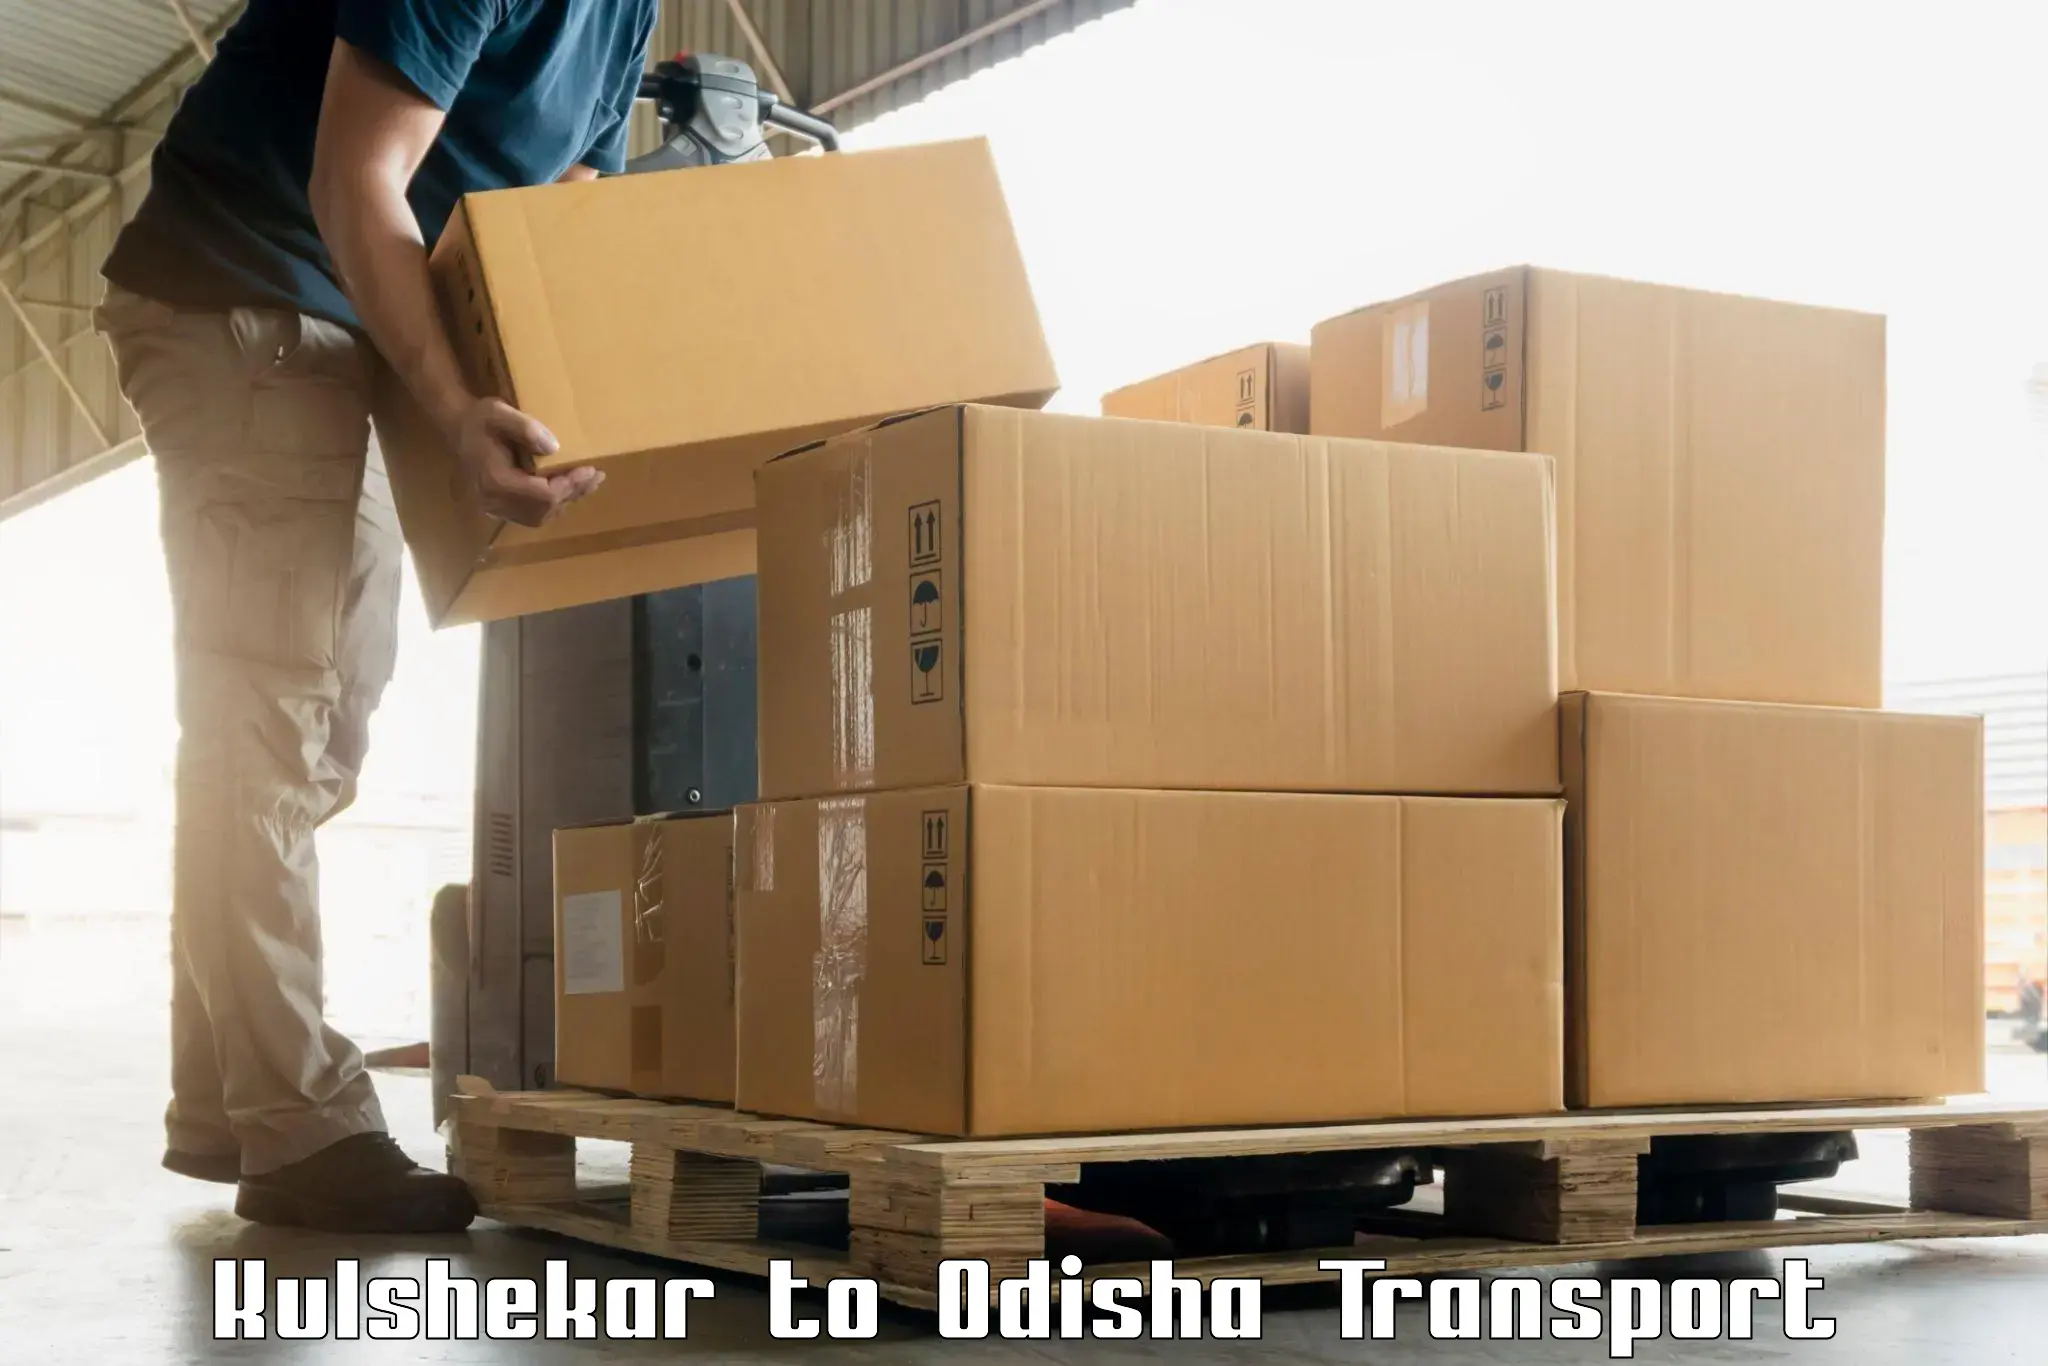 Lorry transport service Kulshekar to Paikana